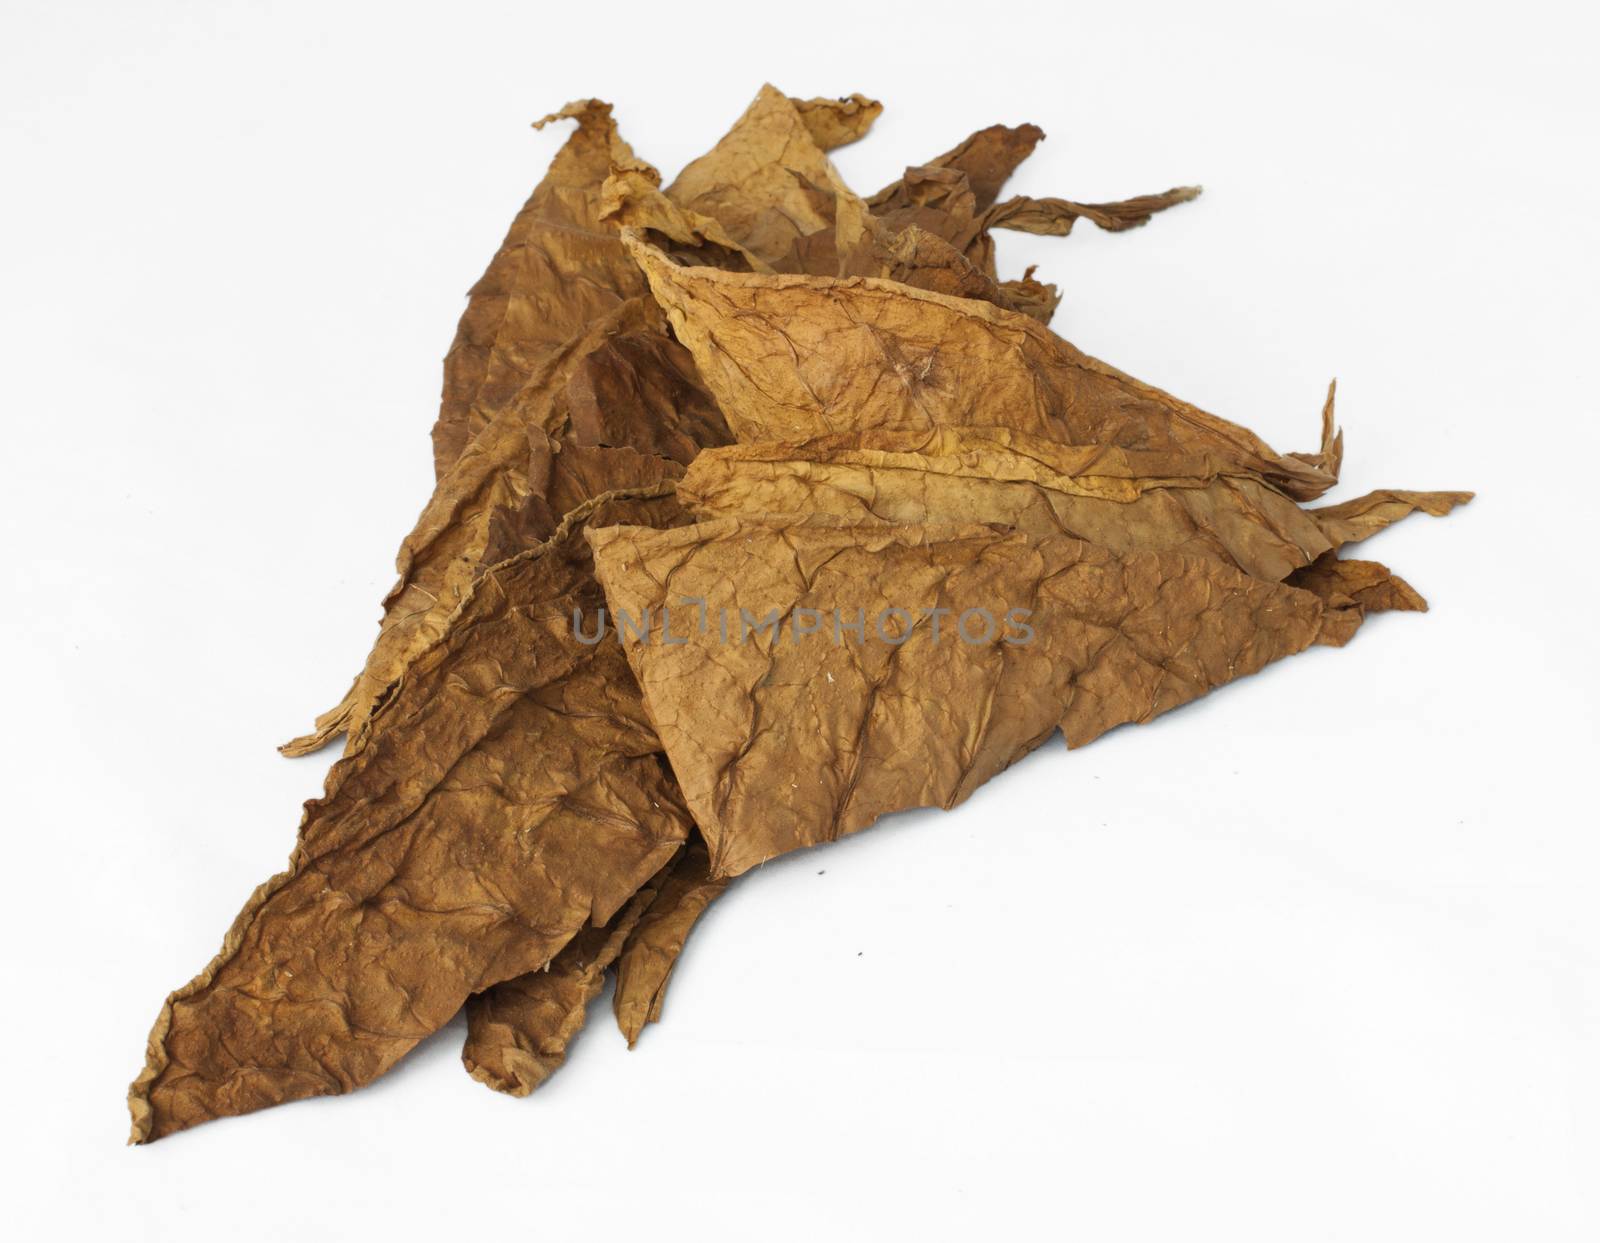 Dried tobacco leaves by deyan_georgiev